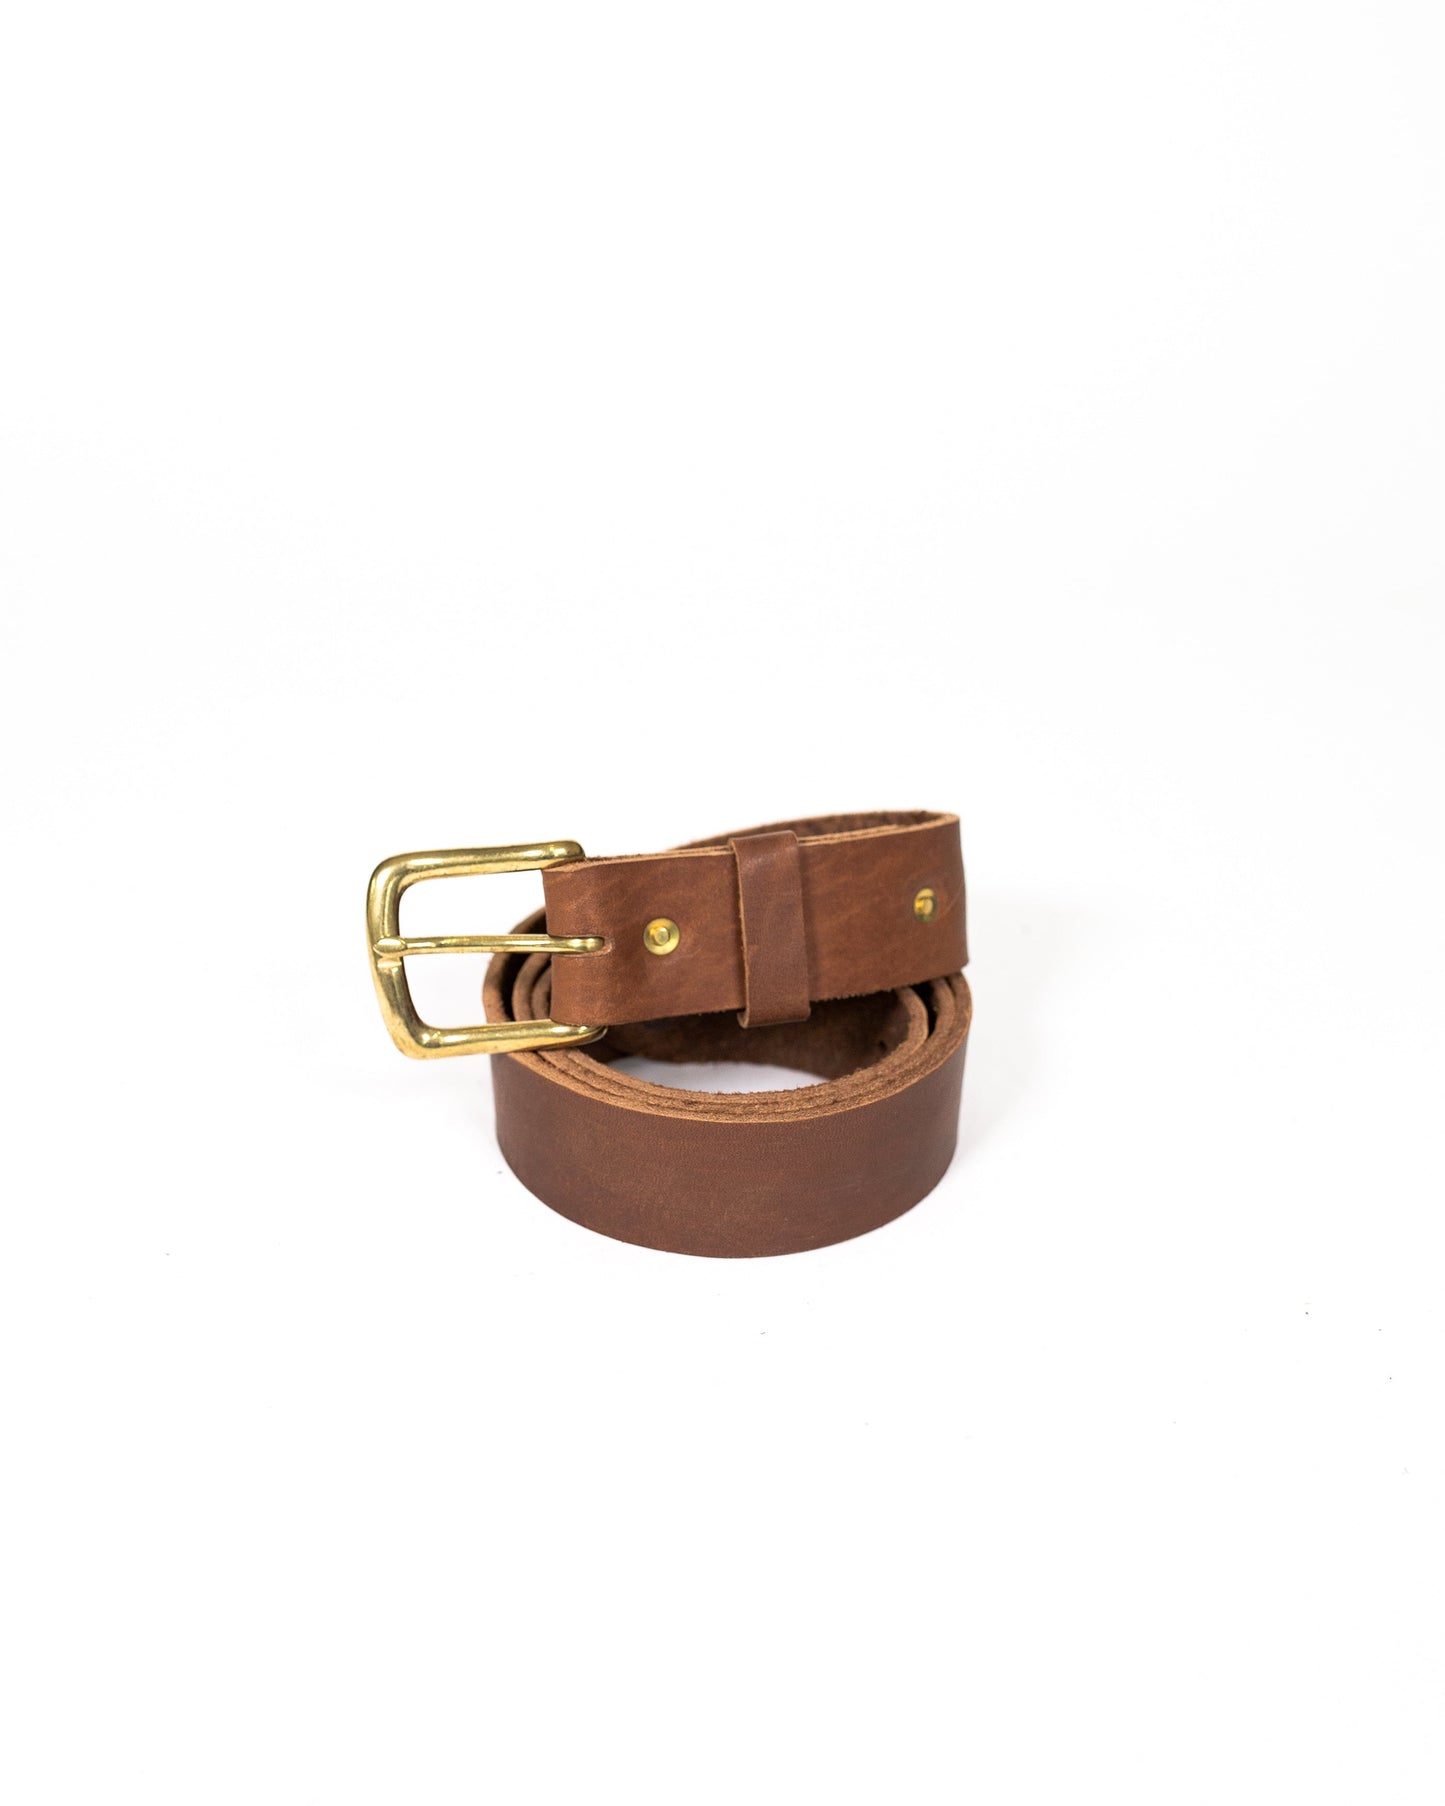 Roscoe Belt - 1 1/2 inch width - Wholesale